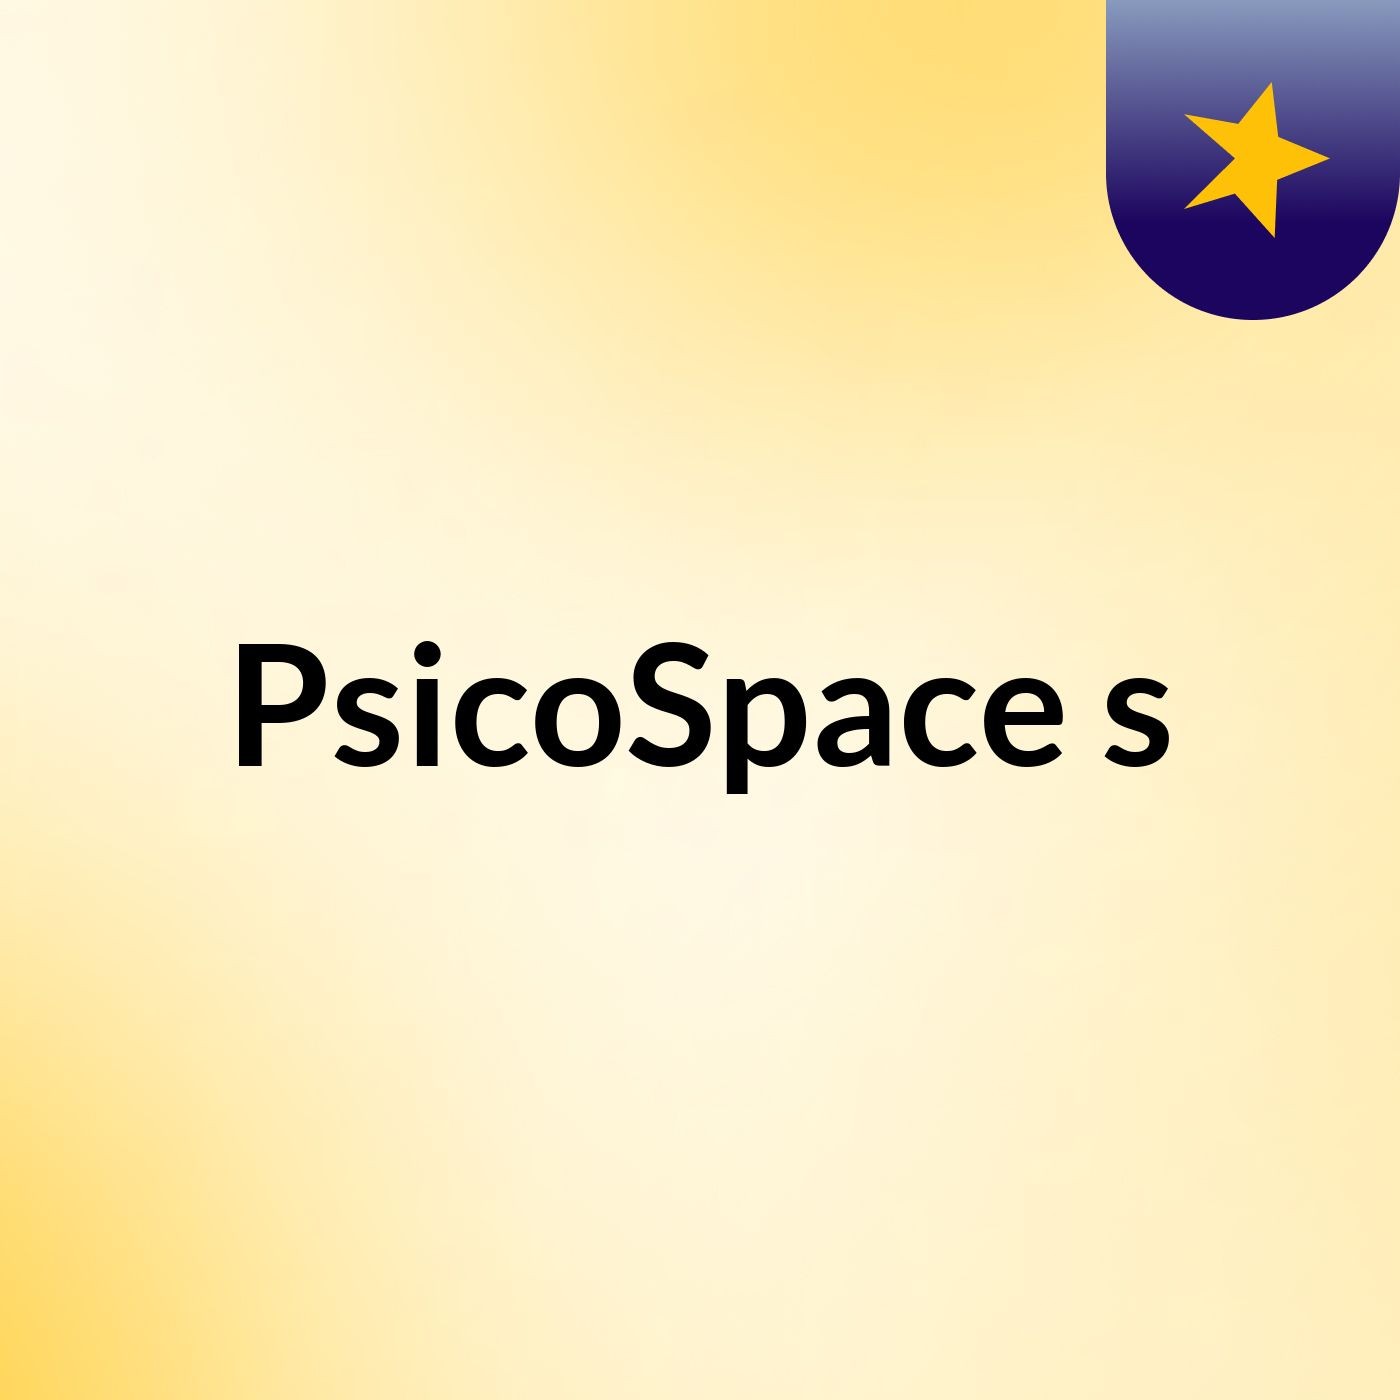 PsicoSpace's